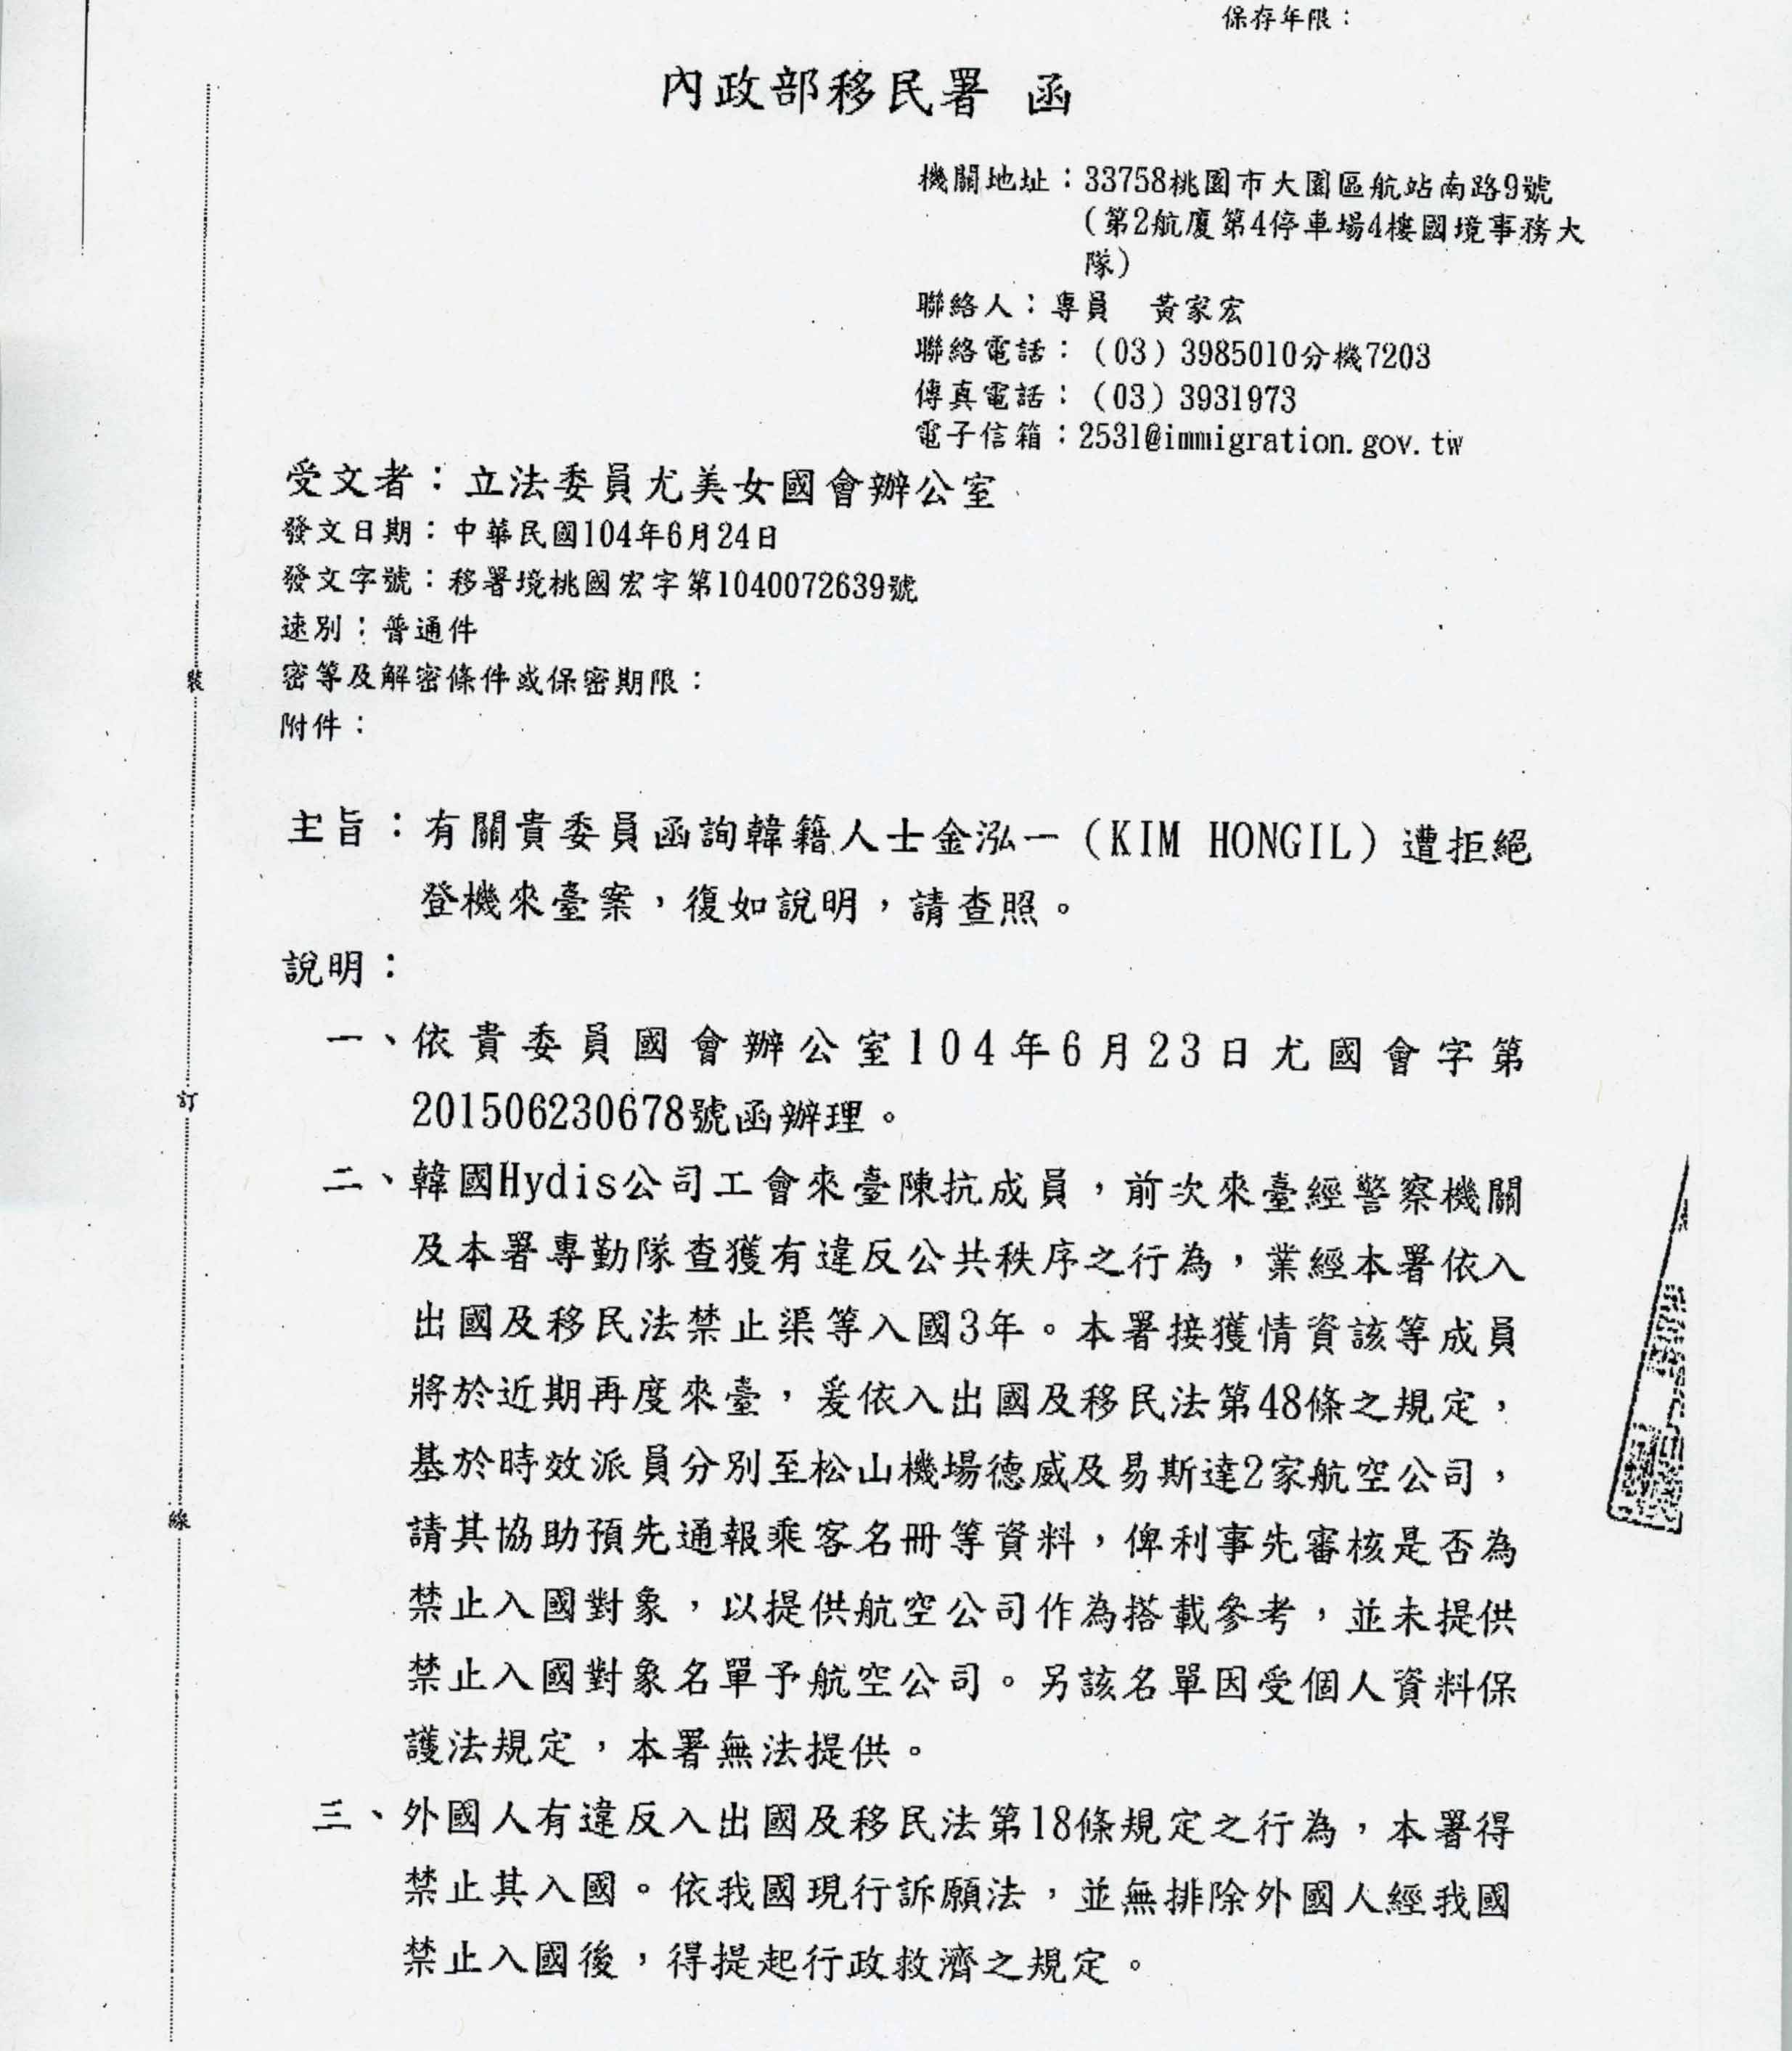 新聞稿 譴責 無賴移民署 吃掉訴願書 濫權黑名單 就為何壽川 公民行動影音紀錄資料庫